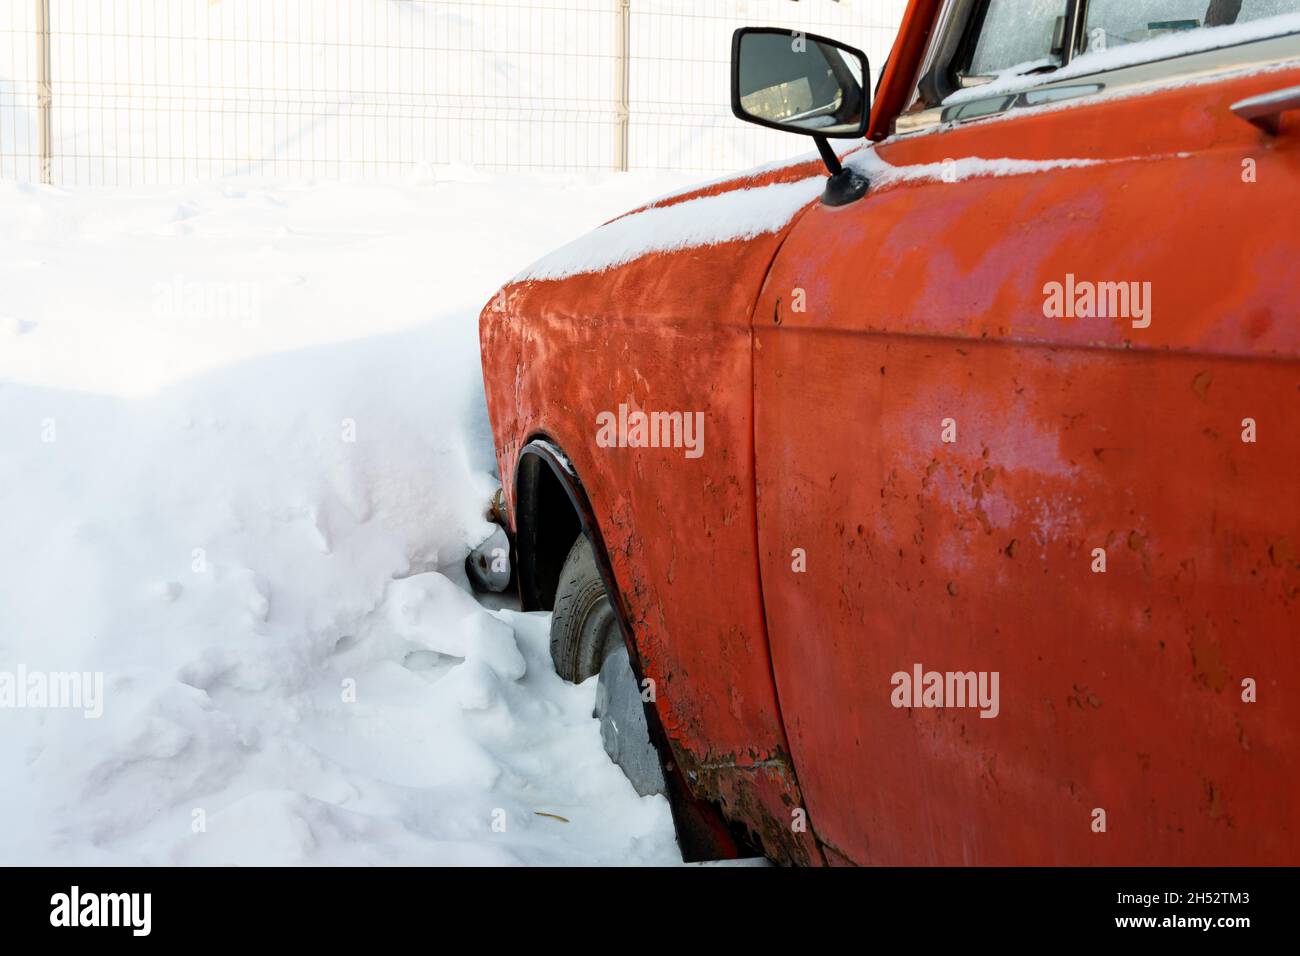 vieille voiture rétro brisée rouge rouillé vieux garé en hiver sur fond de neige le jour d'hiver glacial Banque D'Images